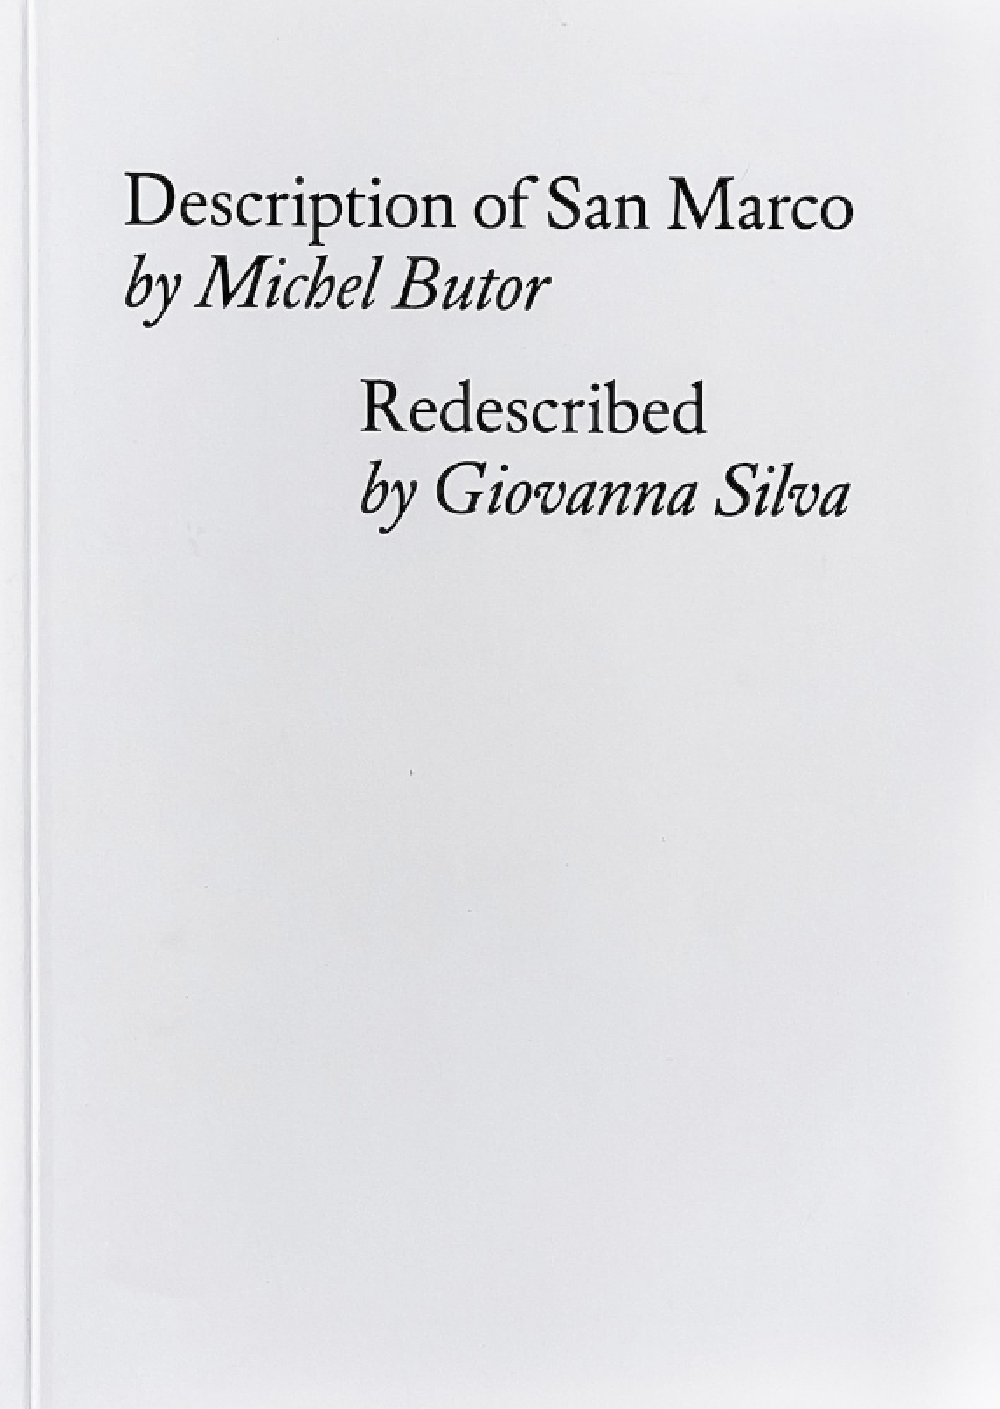 Description of San Marco by Michel Butor Redescribed by Giovanna Silva